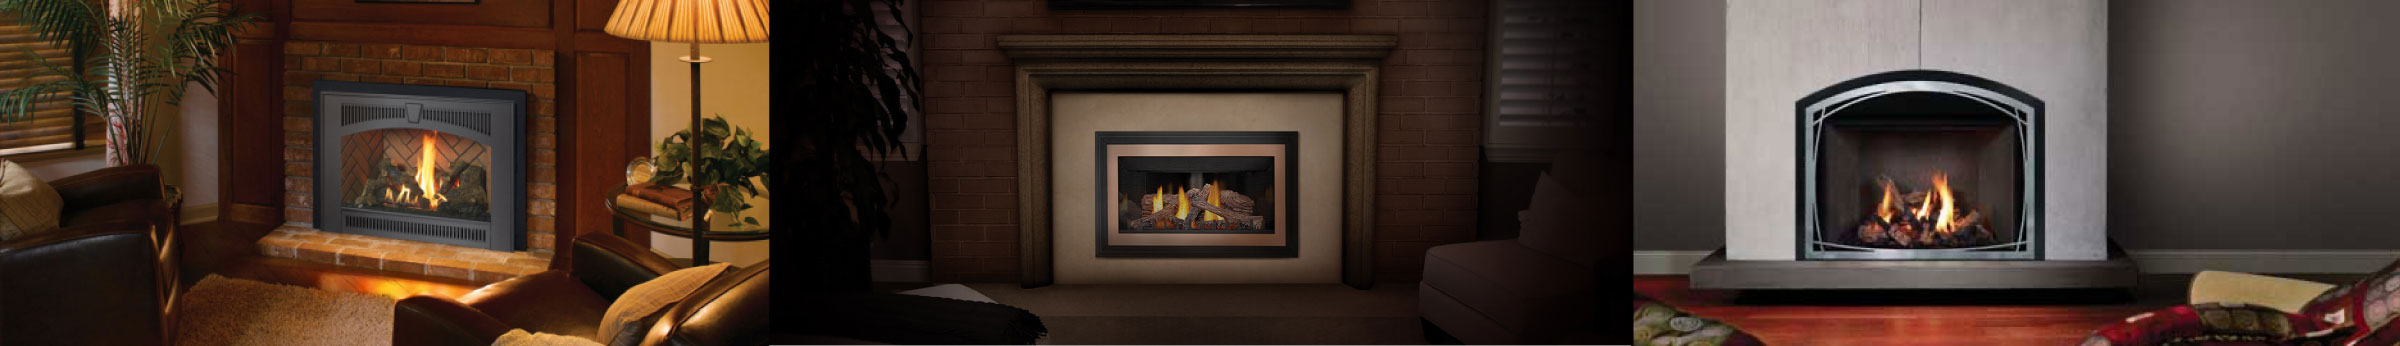 Get your new fireplace from Konieczka today!